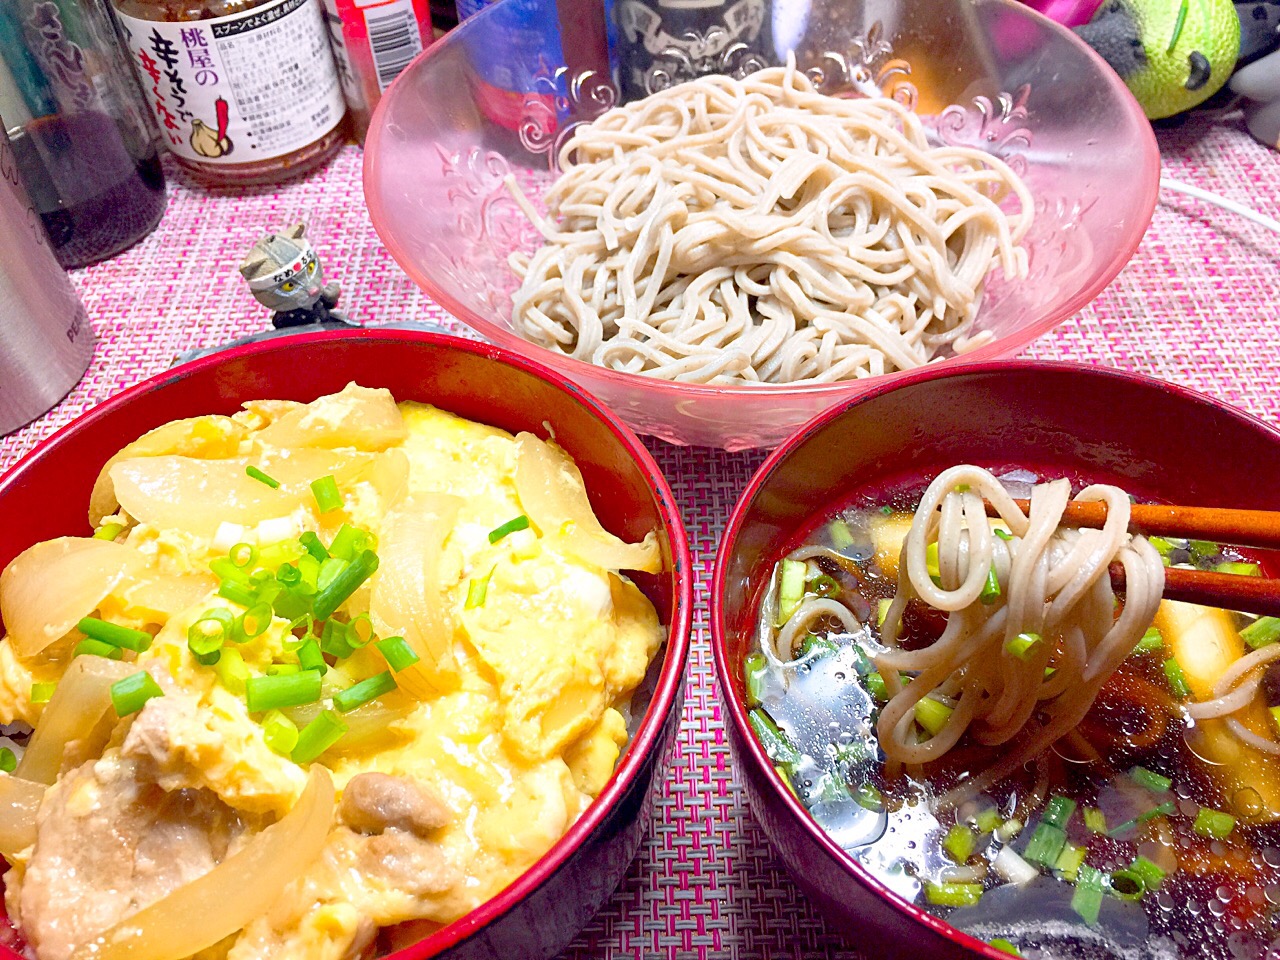 親子丼鶏出汁蕎麦定食
#ヤマサ昆布つゆ 
#一人前原価100円
蕎麦屋さんより美味しかったです。